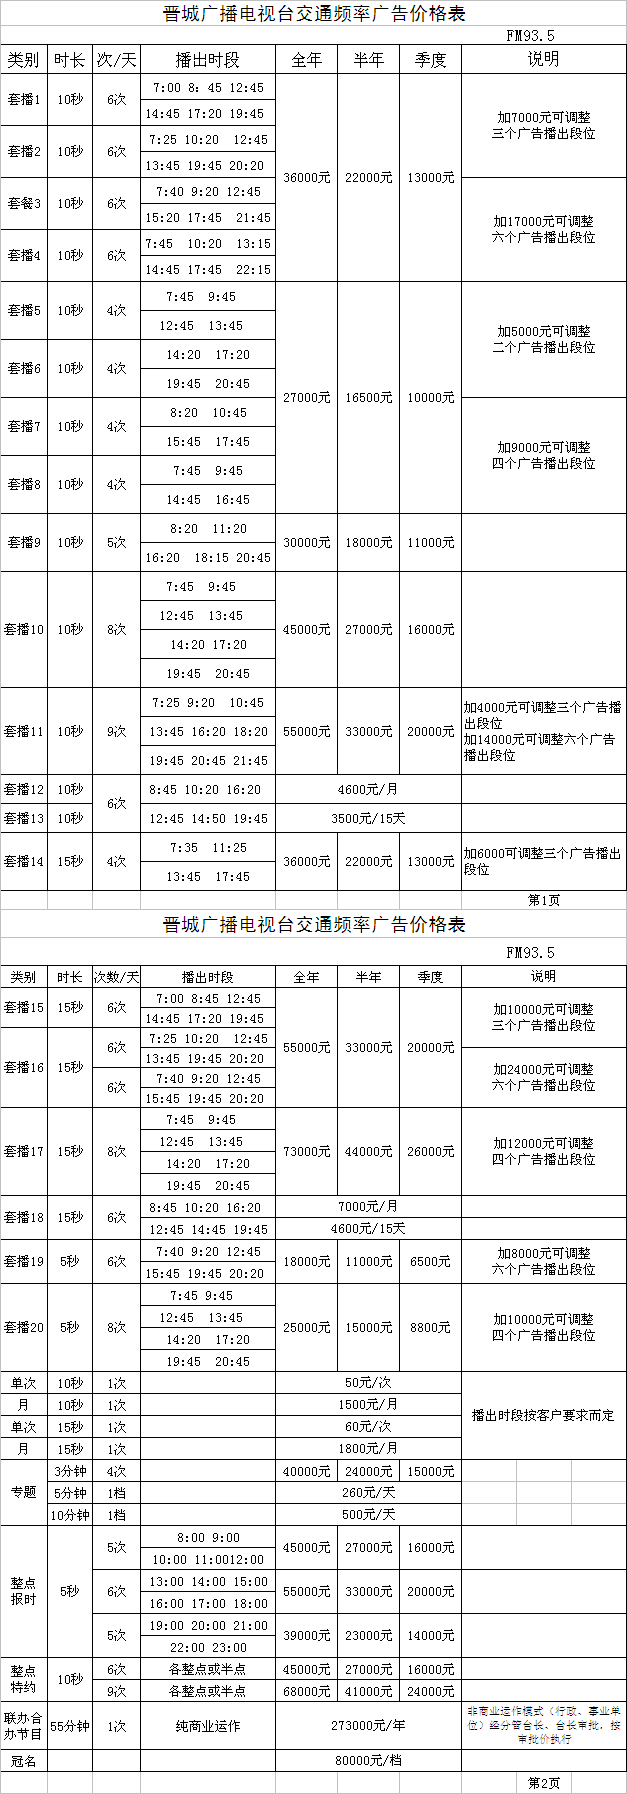 晋城人民广播电台晋城交通广播（FM93.5）2015年广告价格